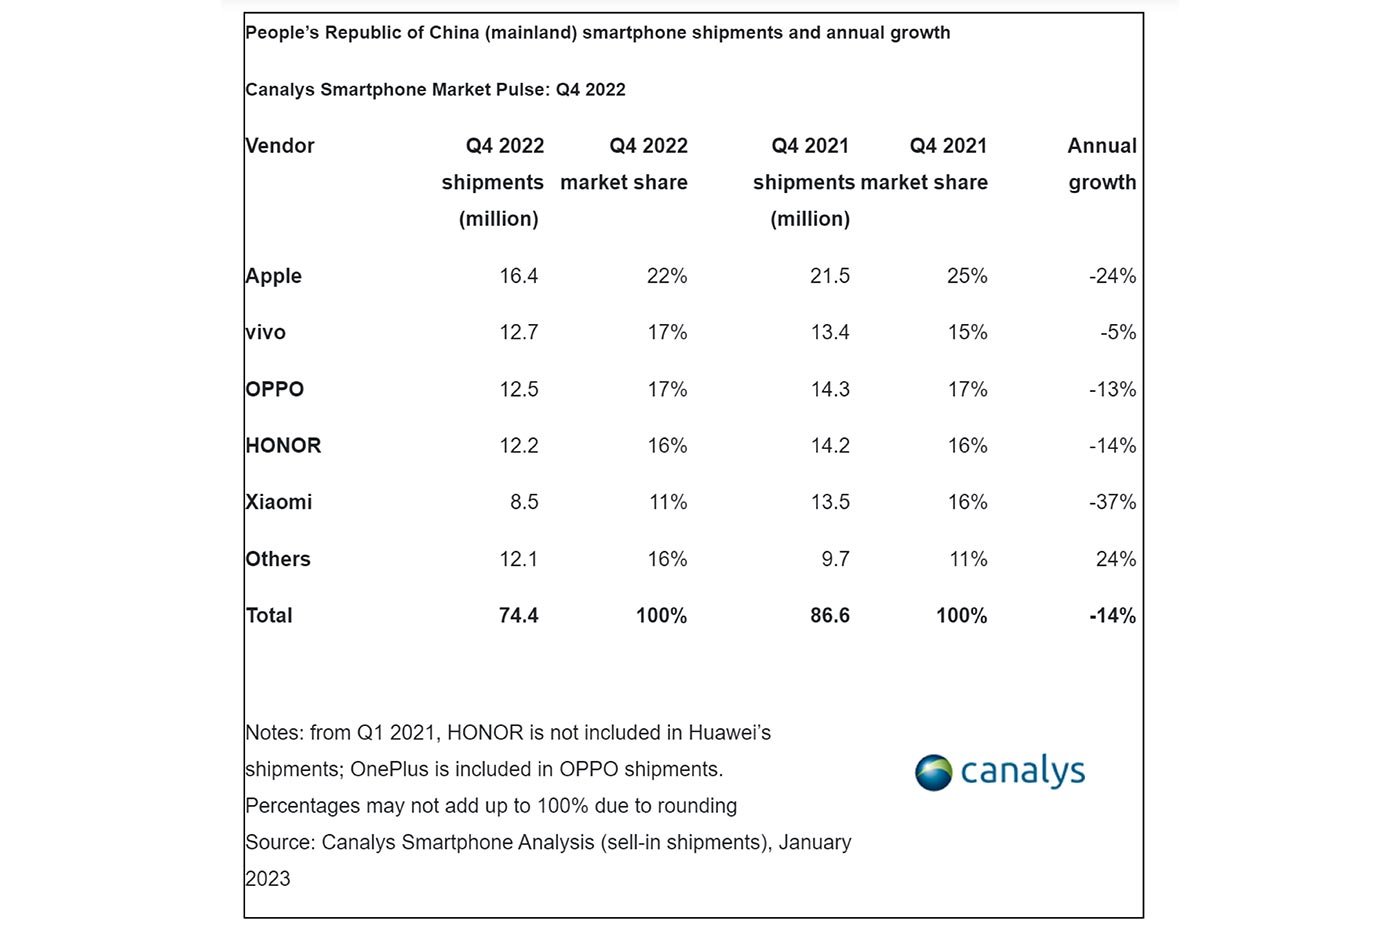 Livraisons de smartphones et croissance annuelle en Chine (Q4 2022)